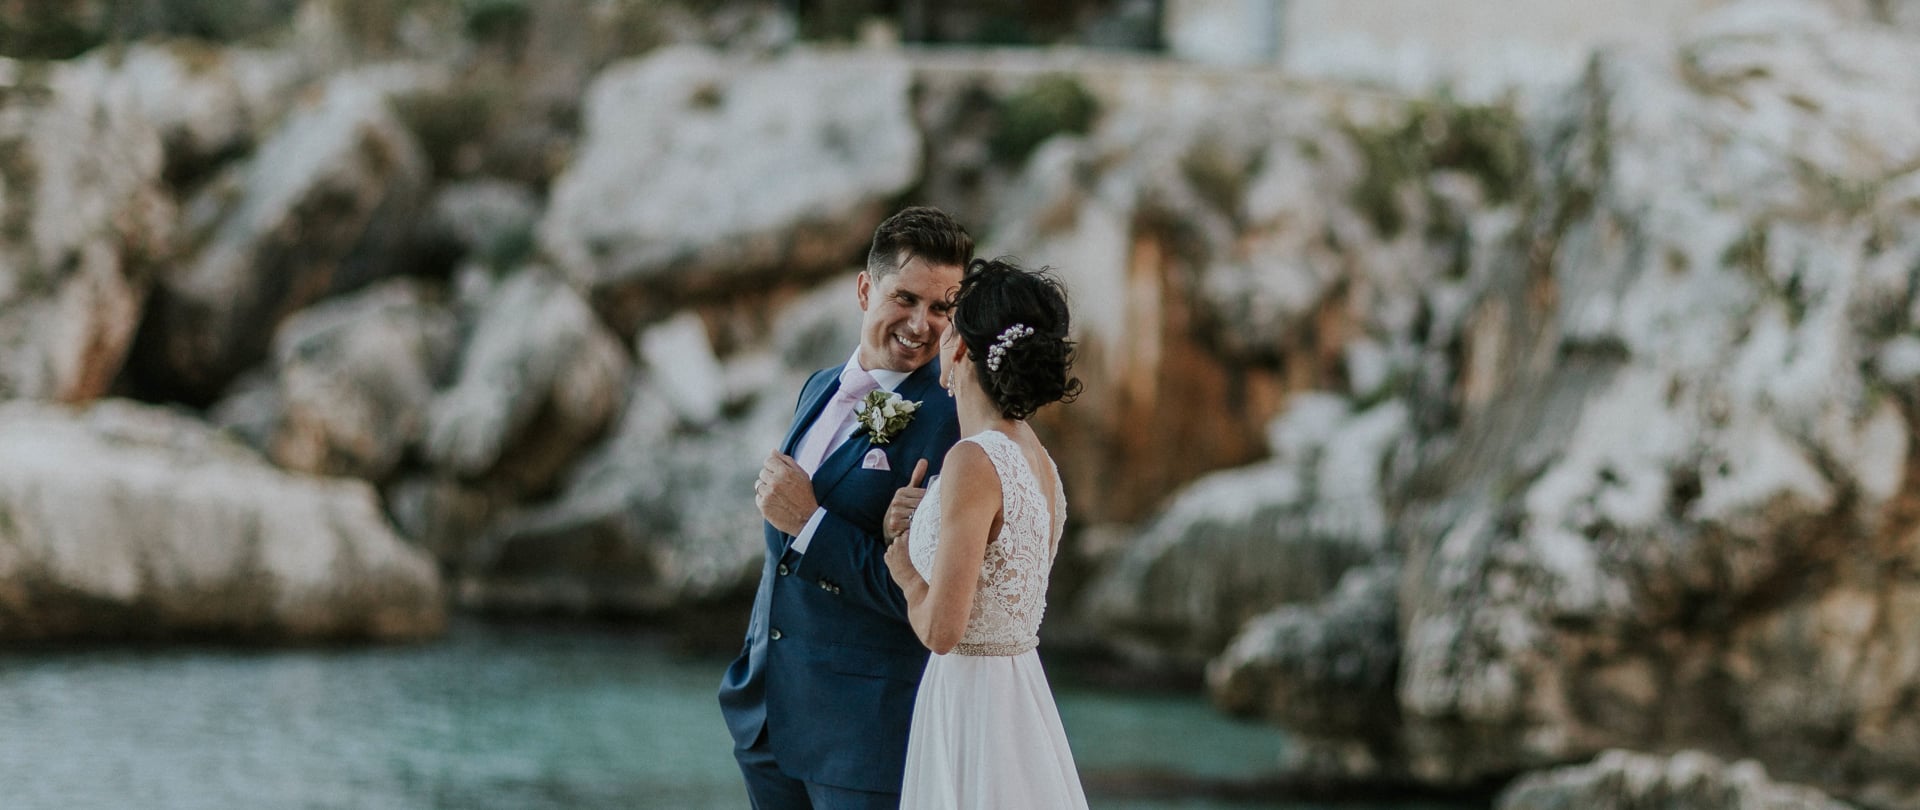 Christina & Justin Wedding Video Filmed atSicily,Italy